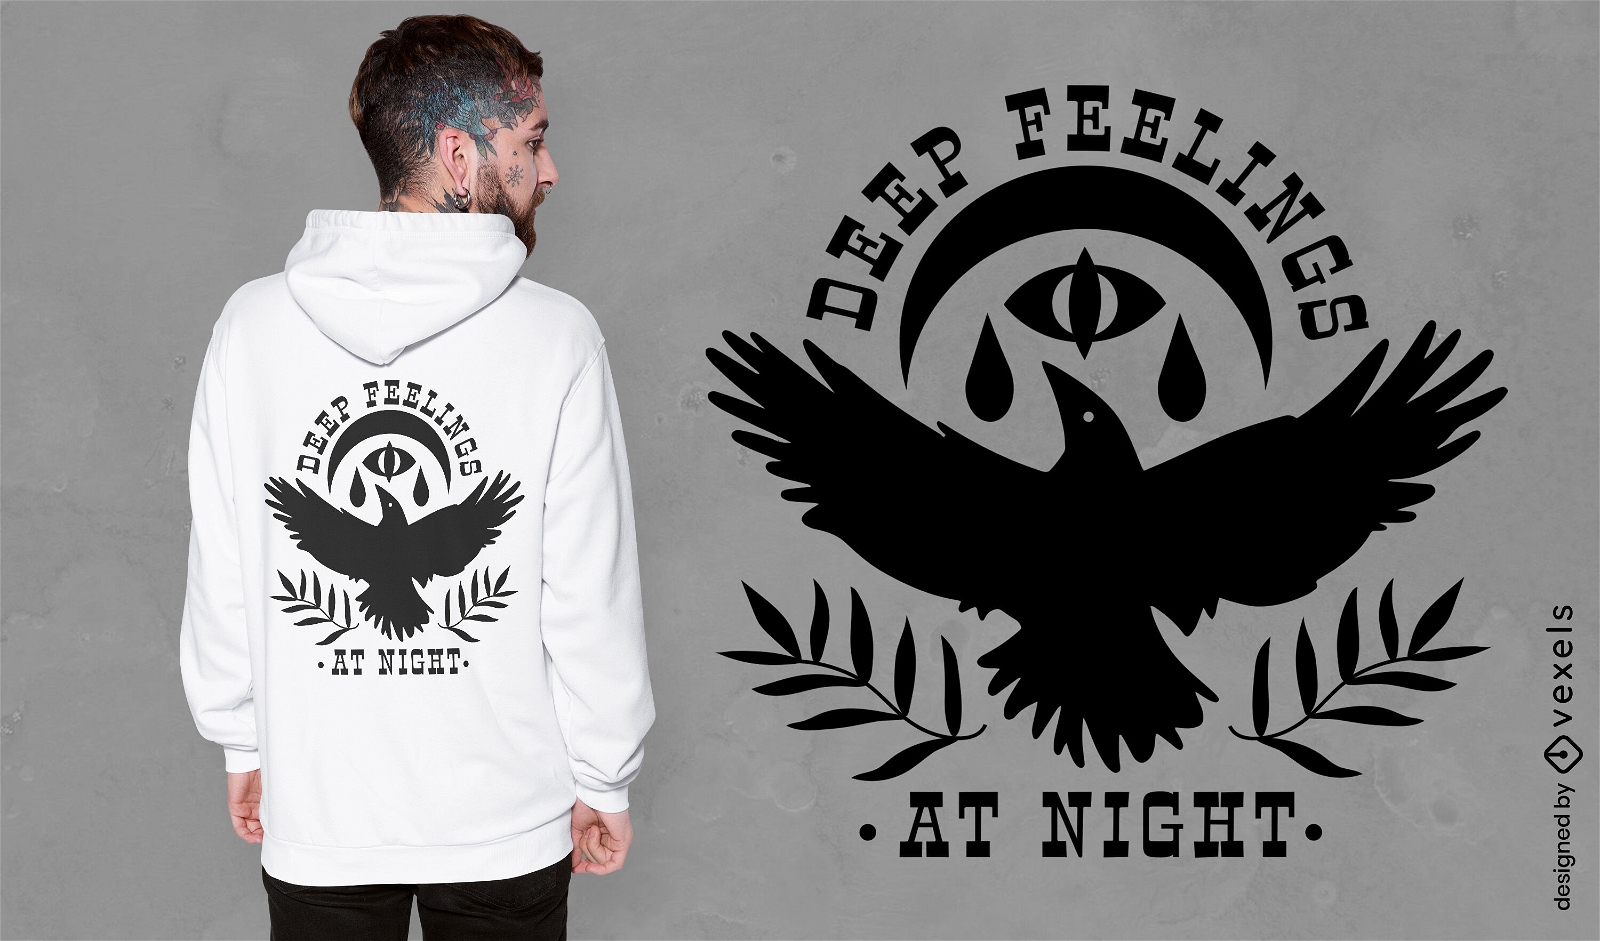 Sentimentos profundos no design de camiseta de corvo noturno